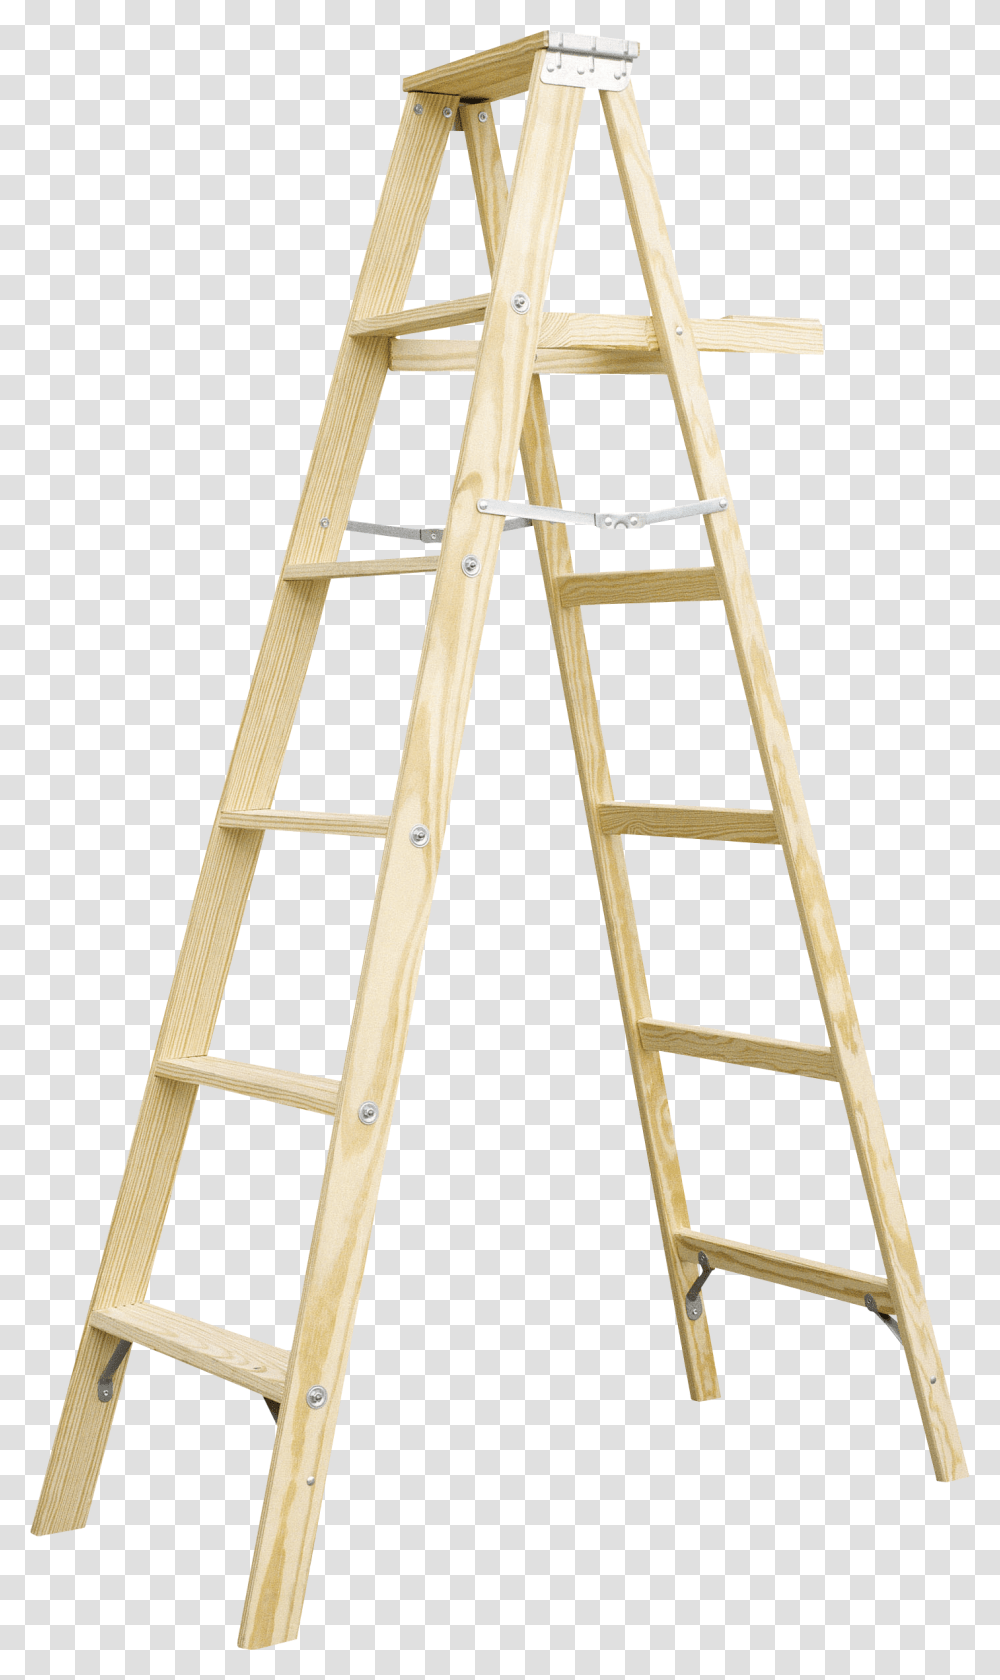 Ladder, Tool, Furniture, Wood, Bed Transparent Png